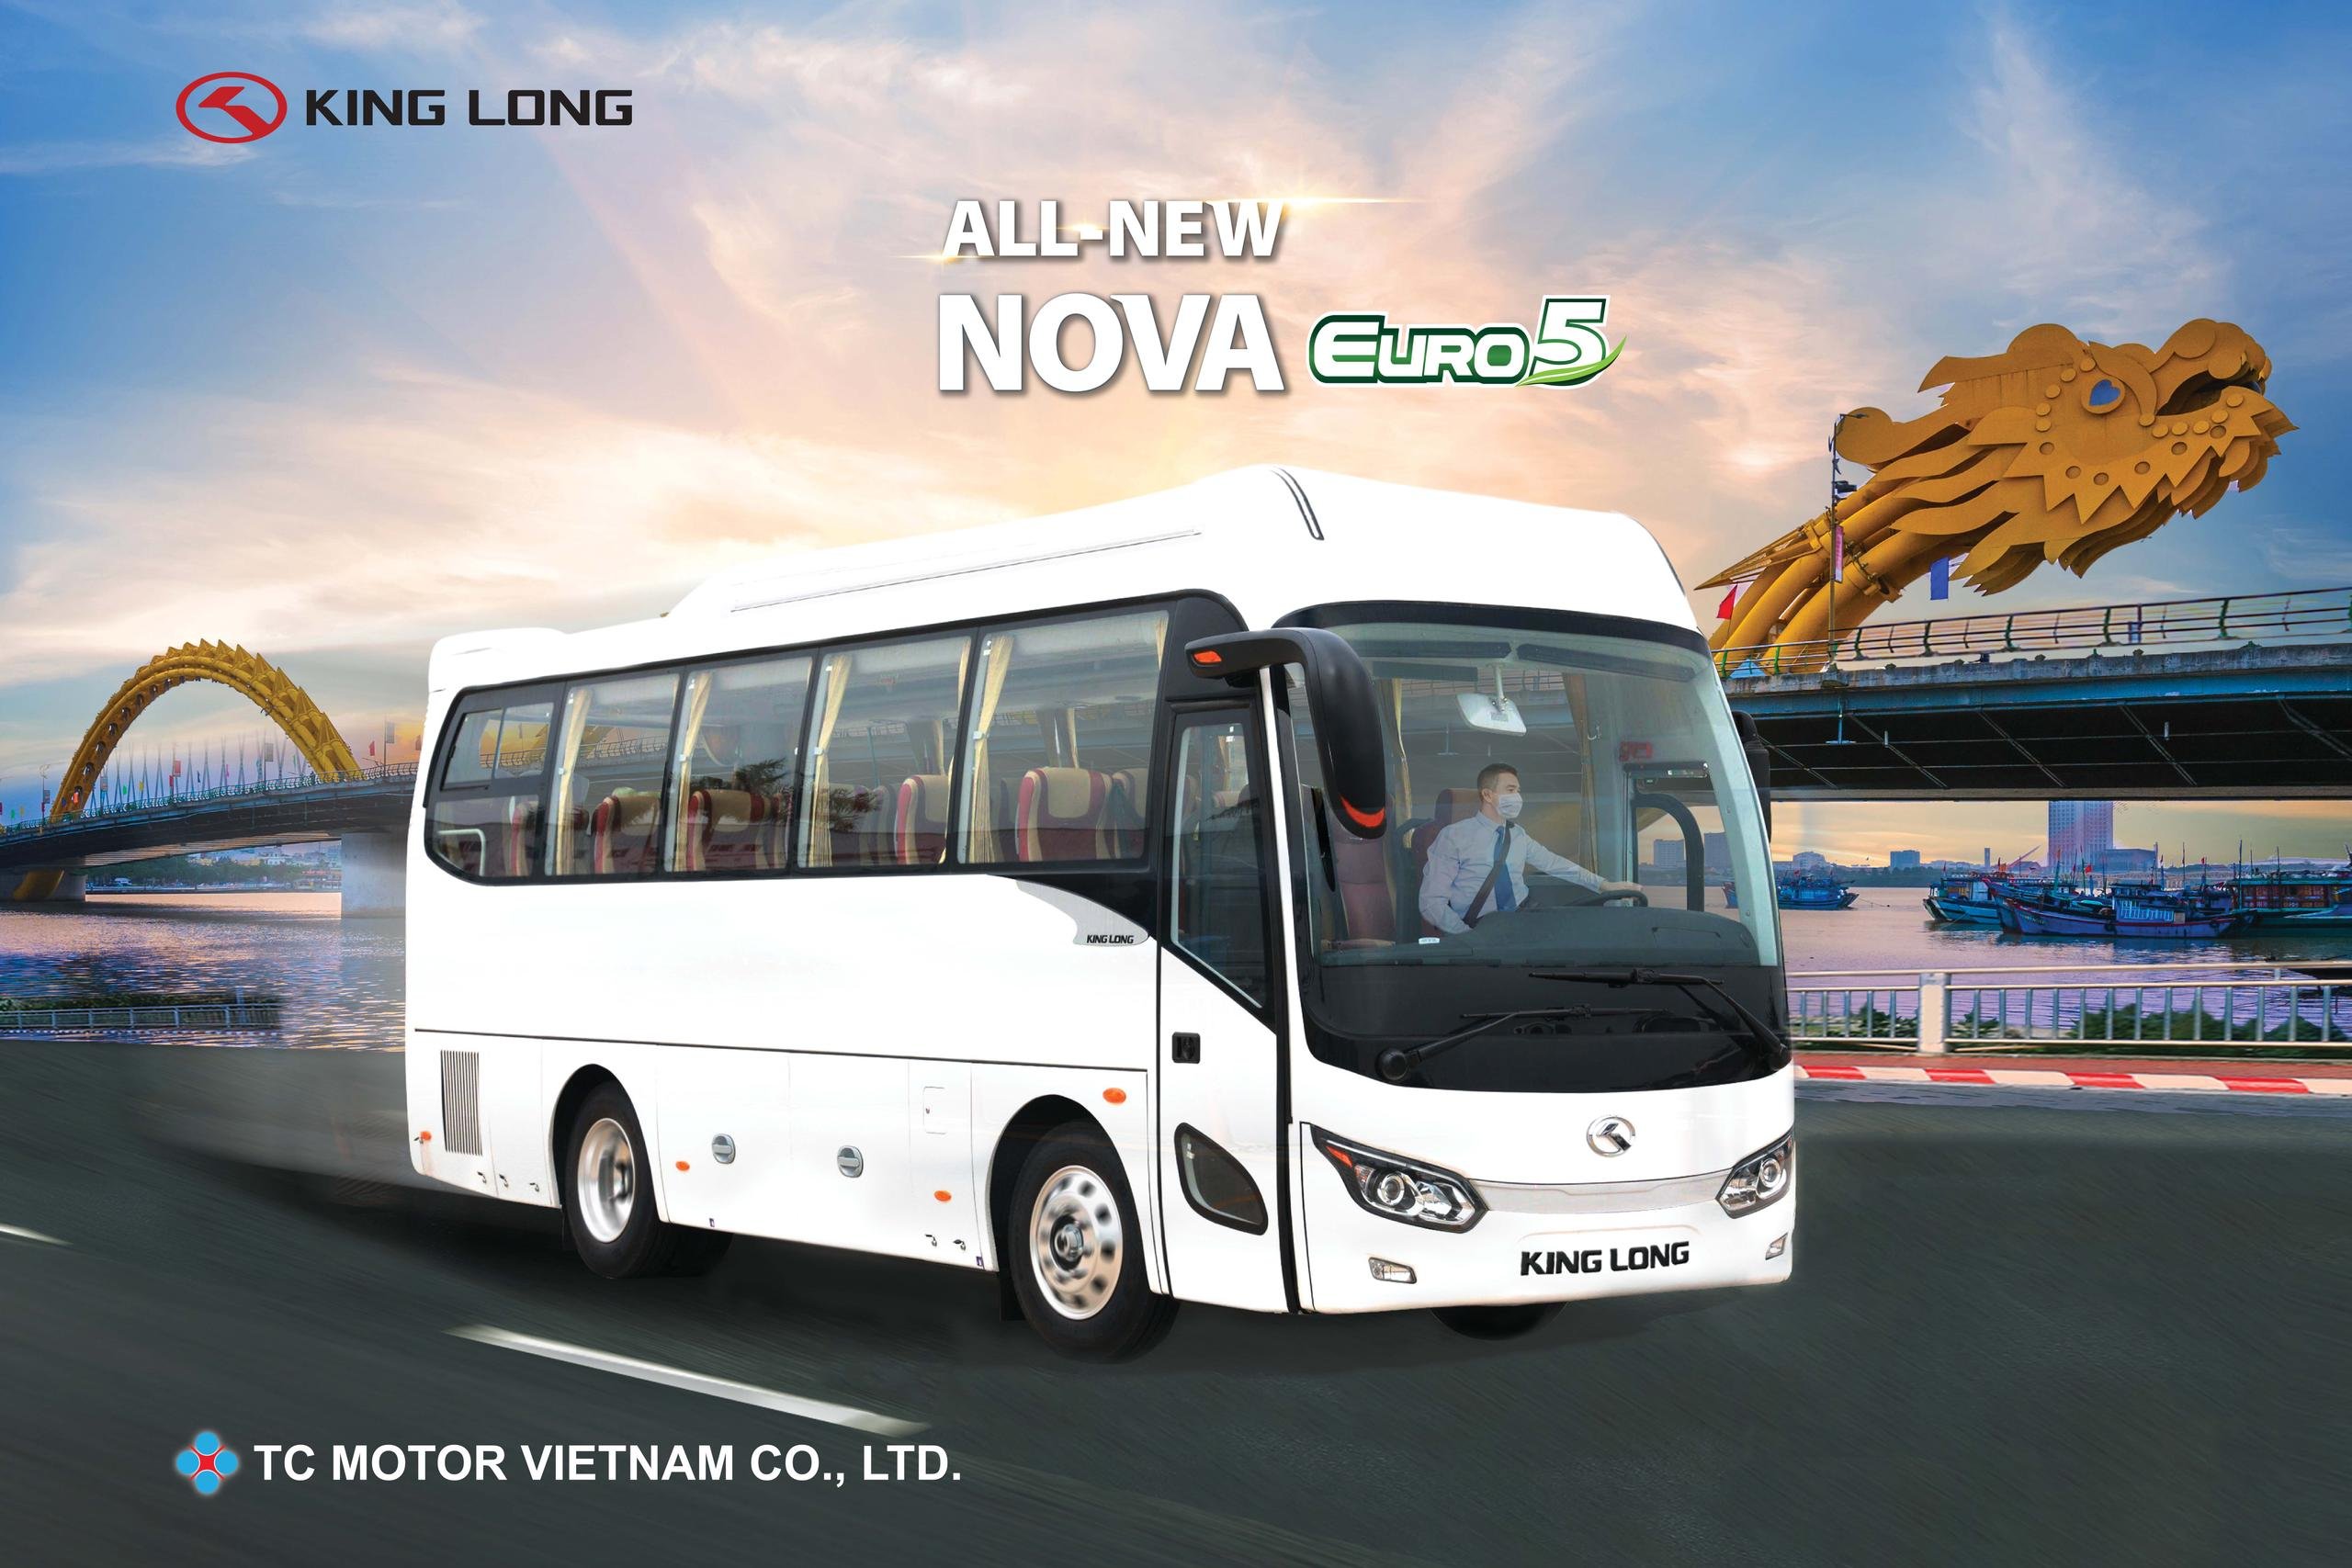 Roadshow giới thiệu xe khách King Long Nova Euro 5 mới trên cả 3 miền